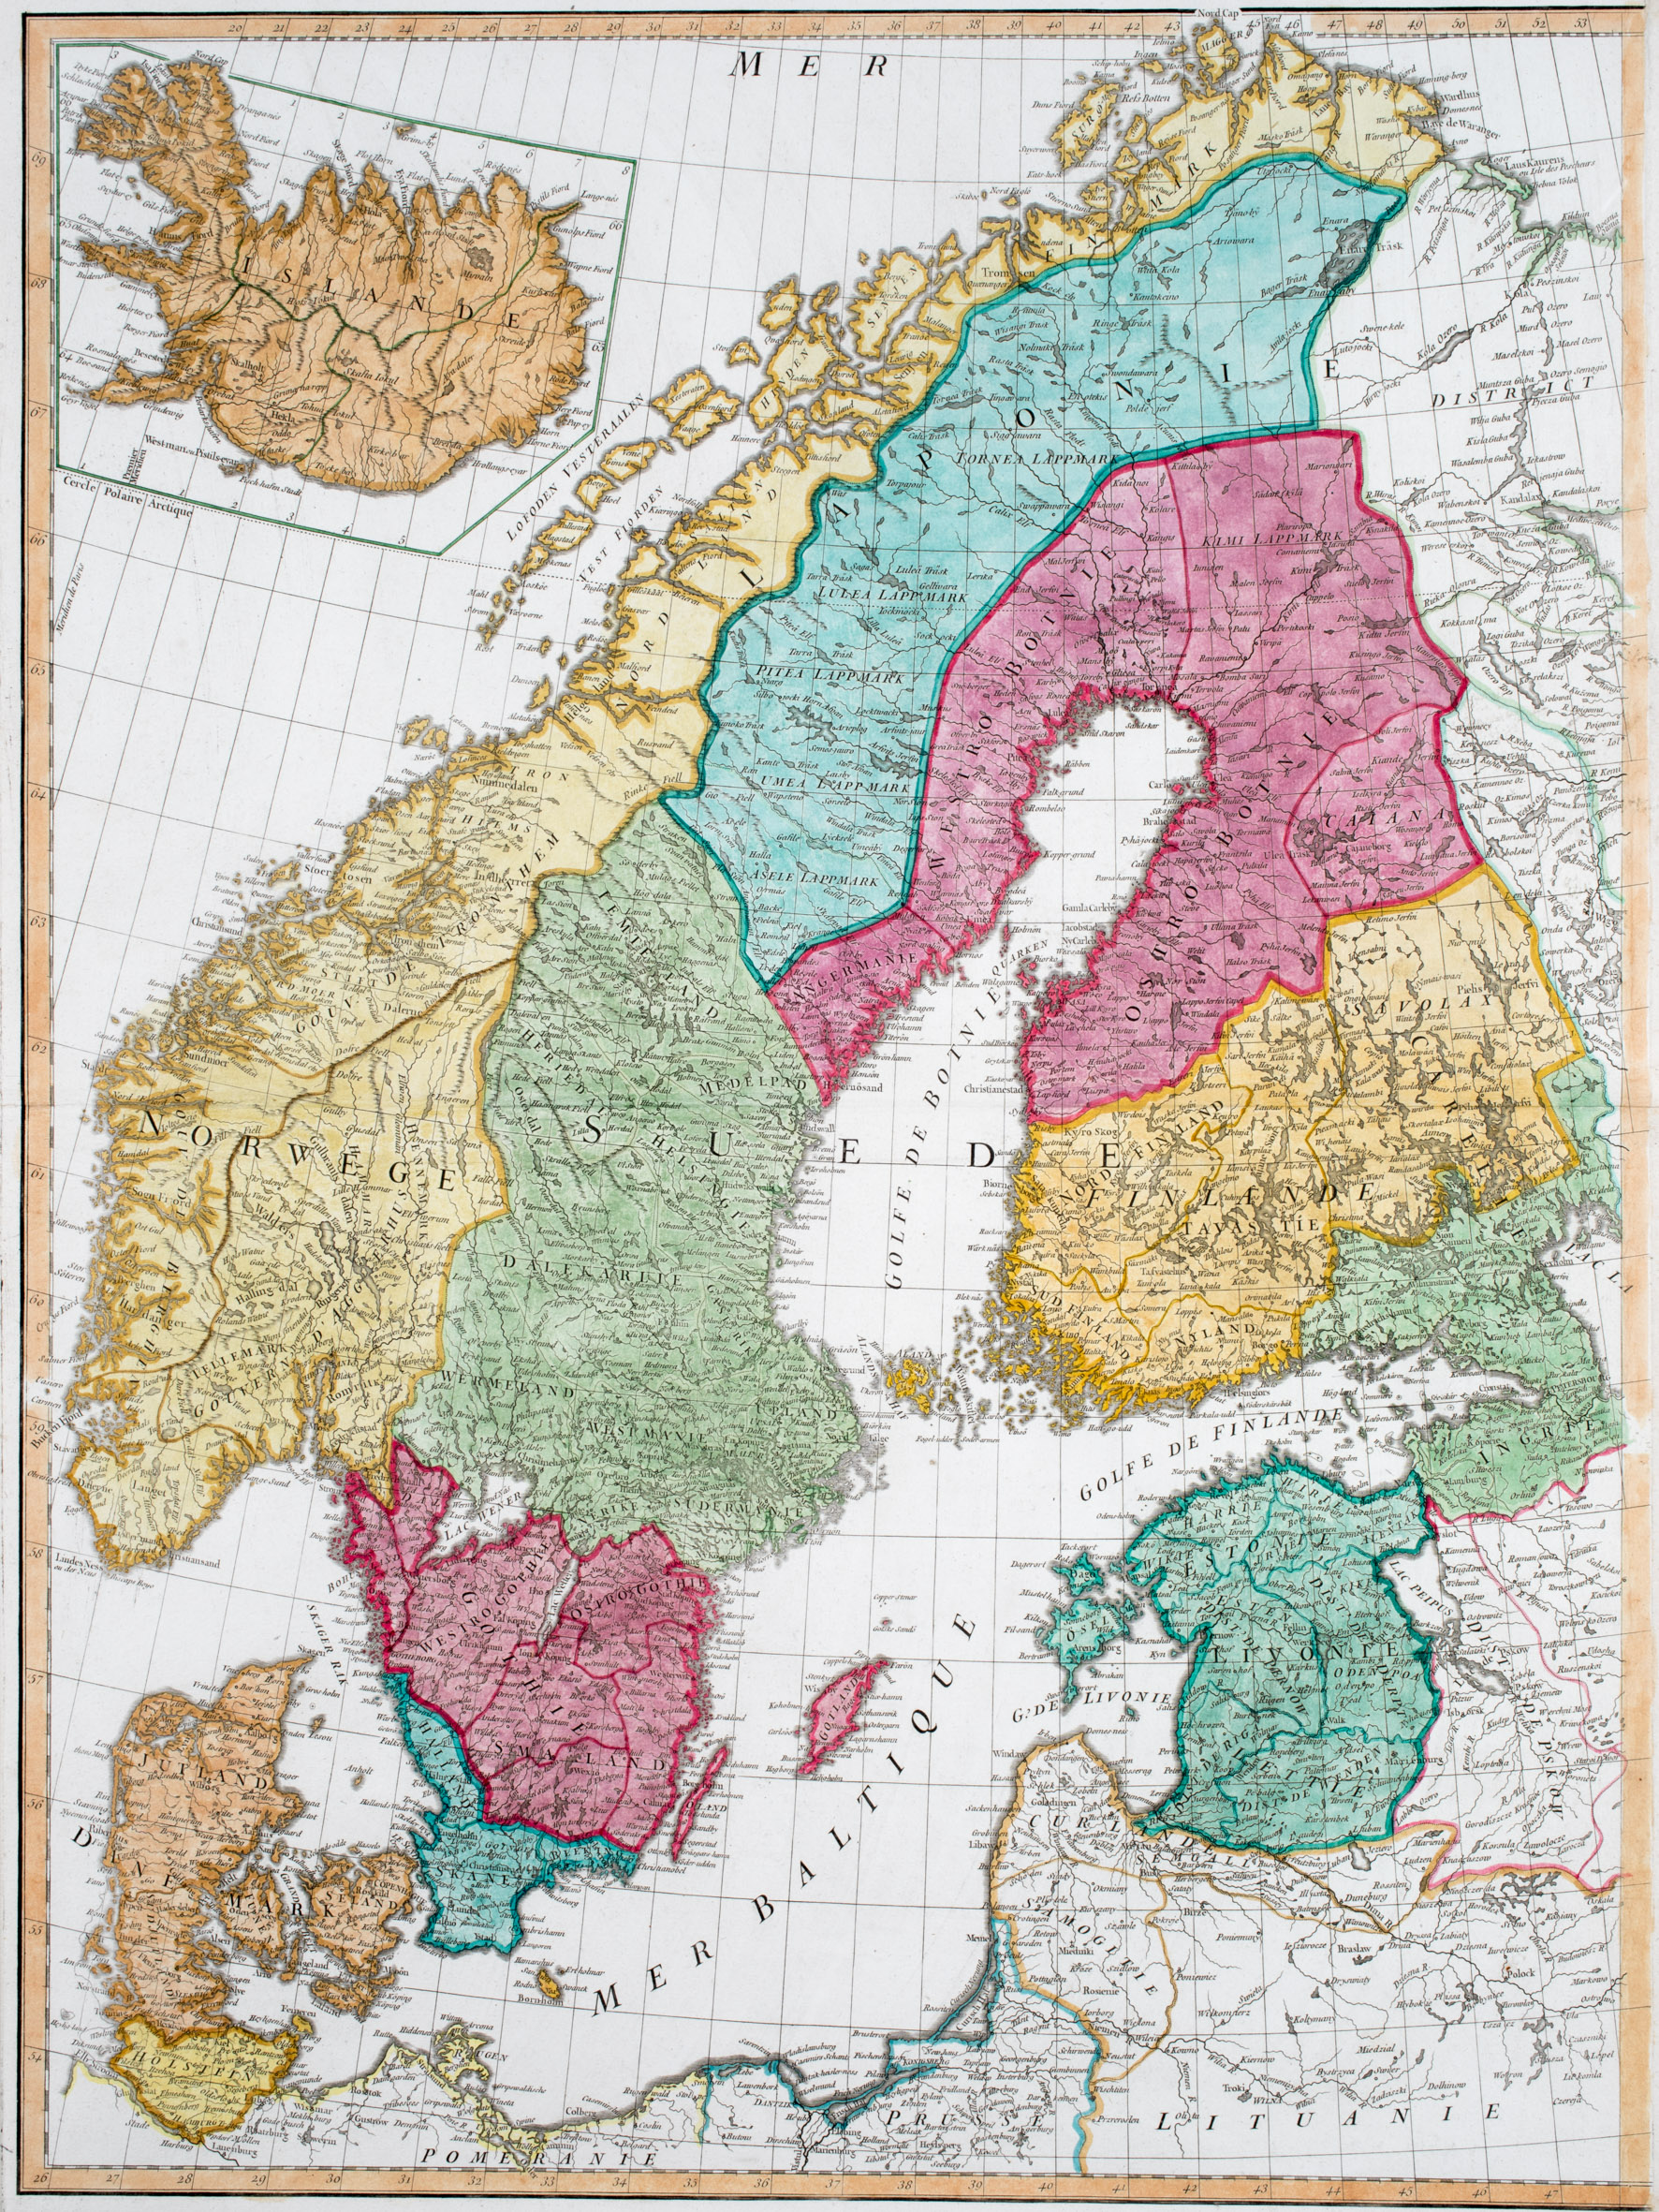 154. Untitled (Sweden, Norway, Denmark, Finland, Baltic Region, Iceland)